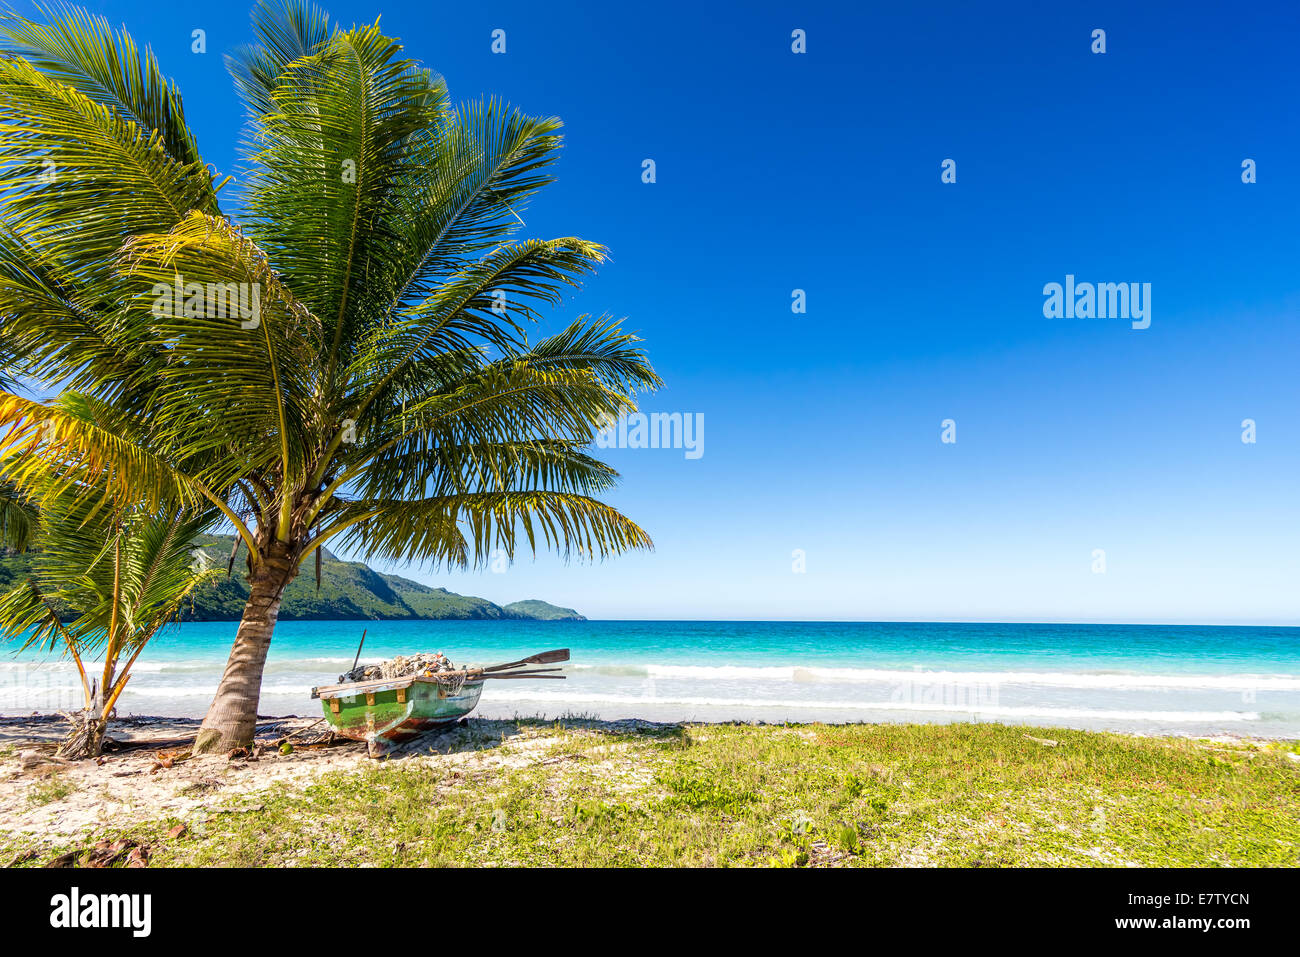 Voile par palmier sur l'une des plus belles plages tropicales dans les Caraïbes, Playa Rincon, près de Las Galeras, République Dominicaine Banque D'Images